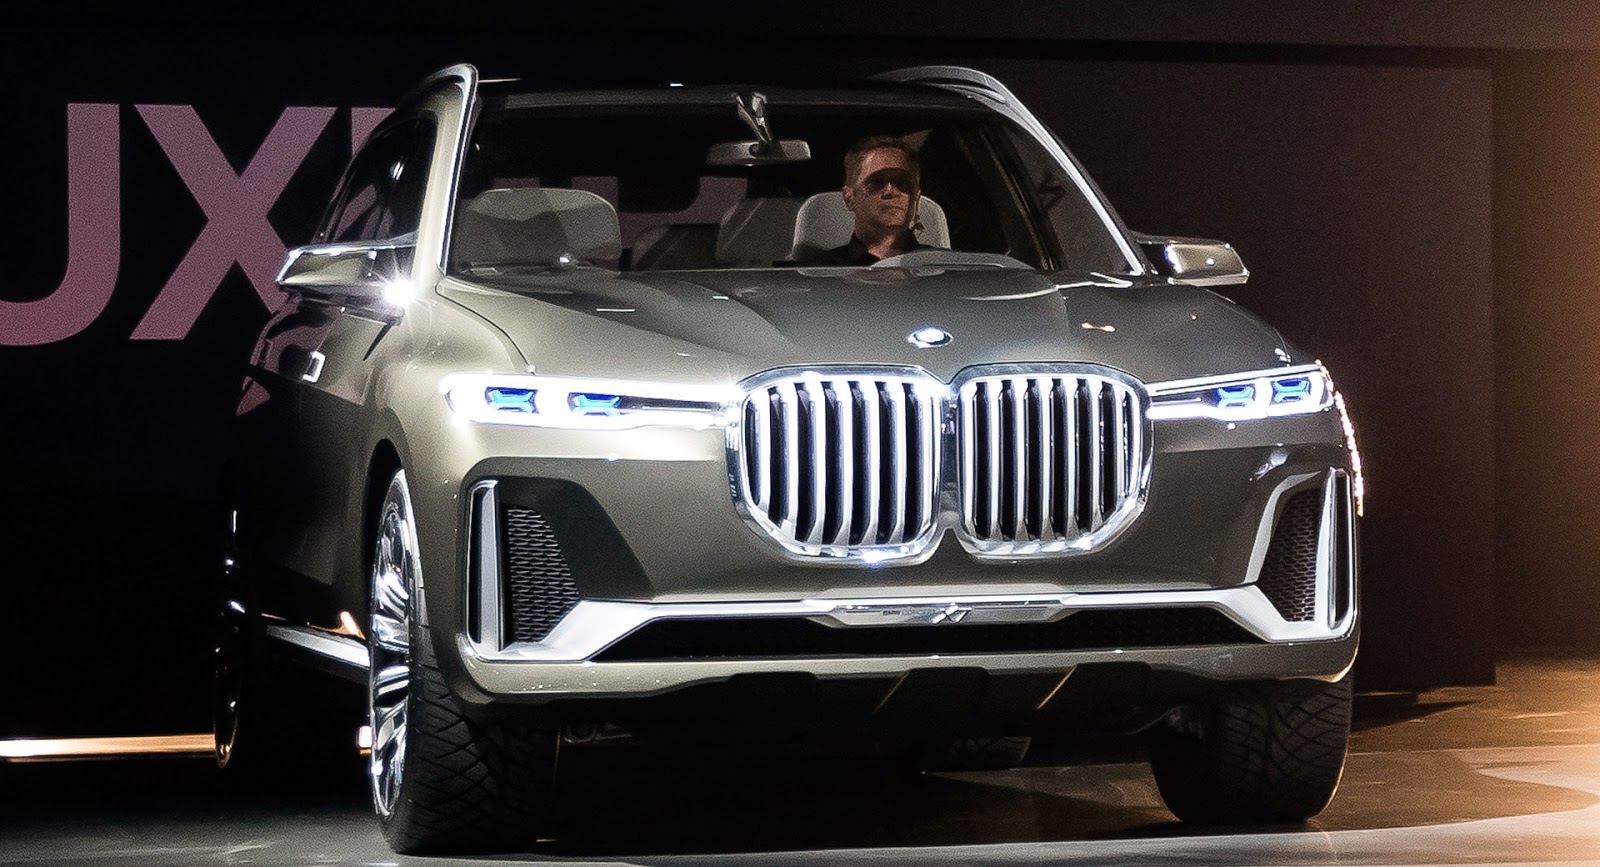 W Detroit zabrakło studyjnego modelu BMW X7